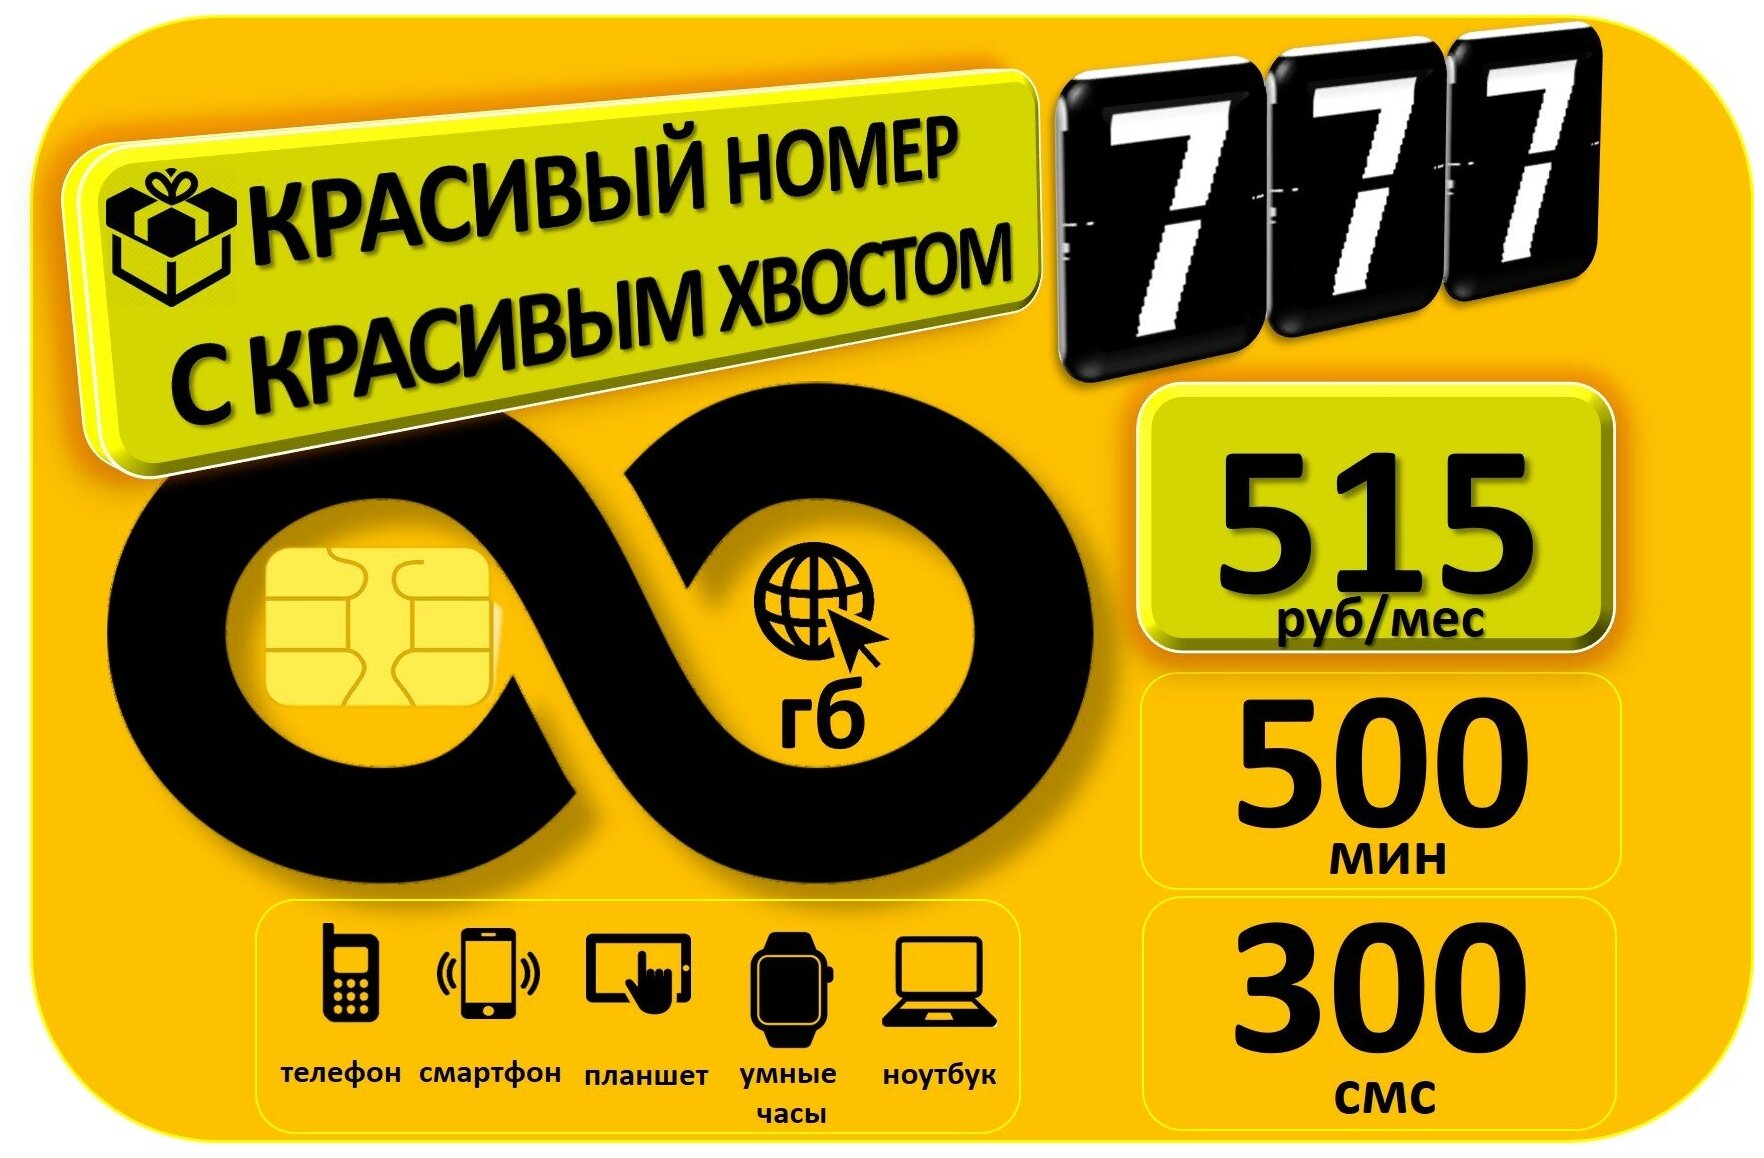 СИМ карта безлимитный интернет красивый номер с красивым хвостом 777 Аб. плата 515руб/мес 500мин/300смс